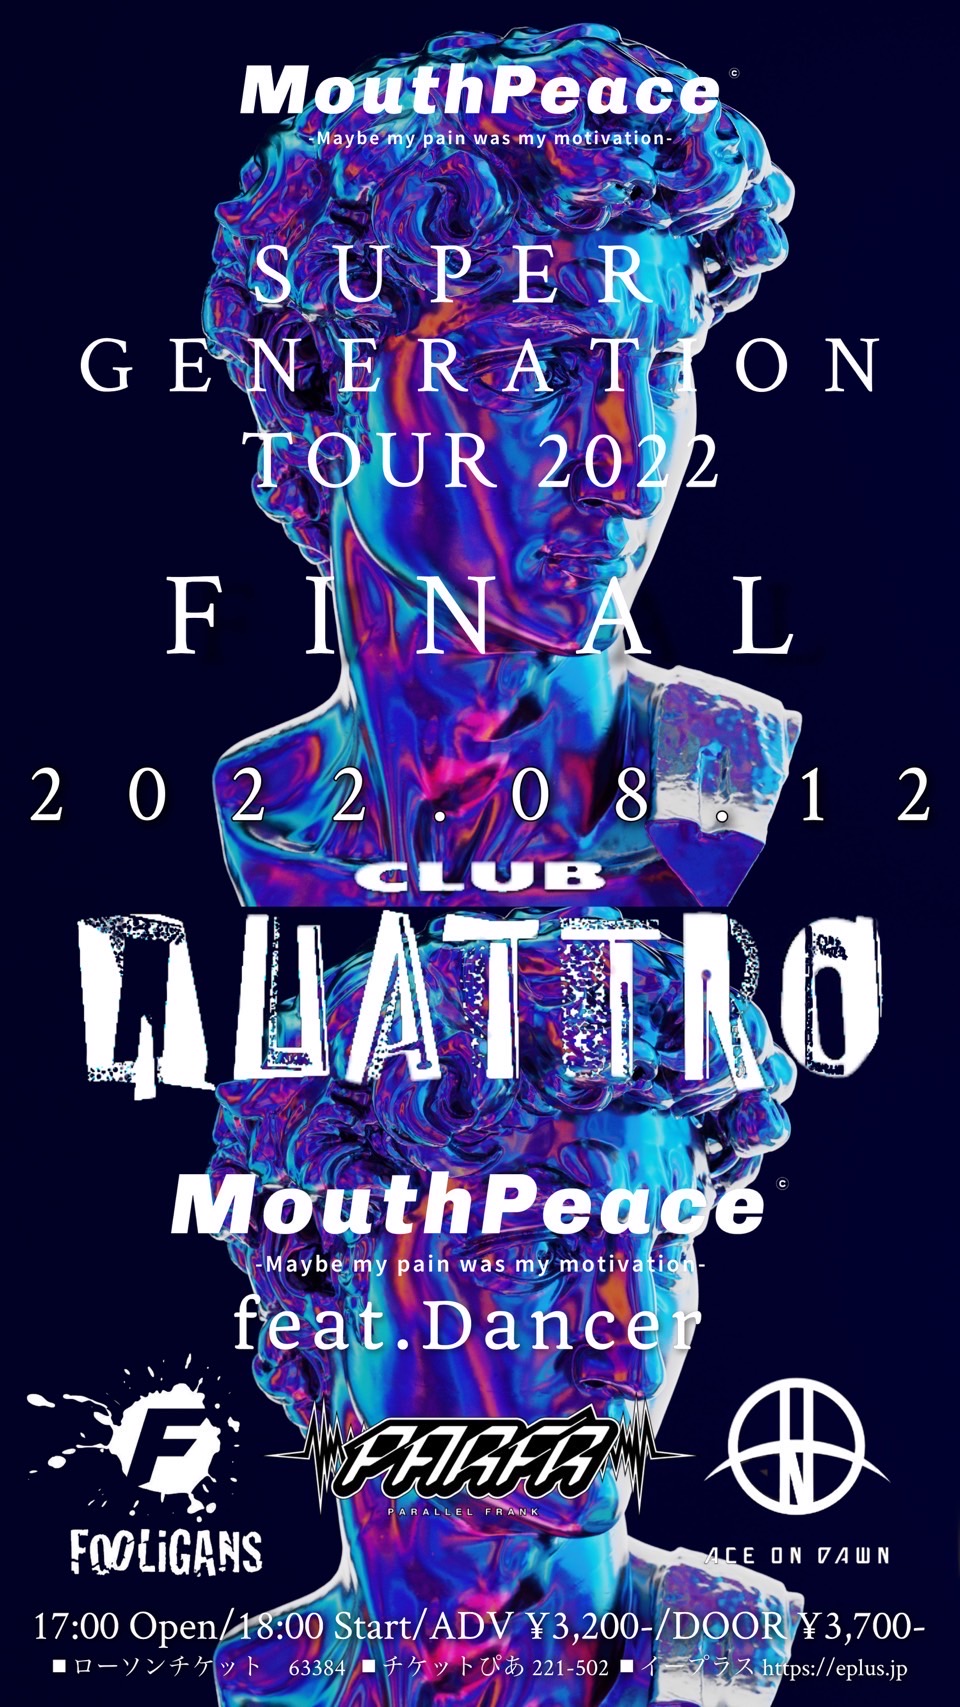 MouthPeace SUPER GENERATION TOUR 2022 FINAL